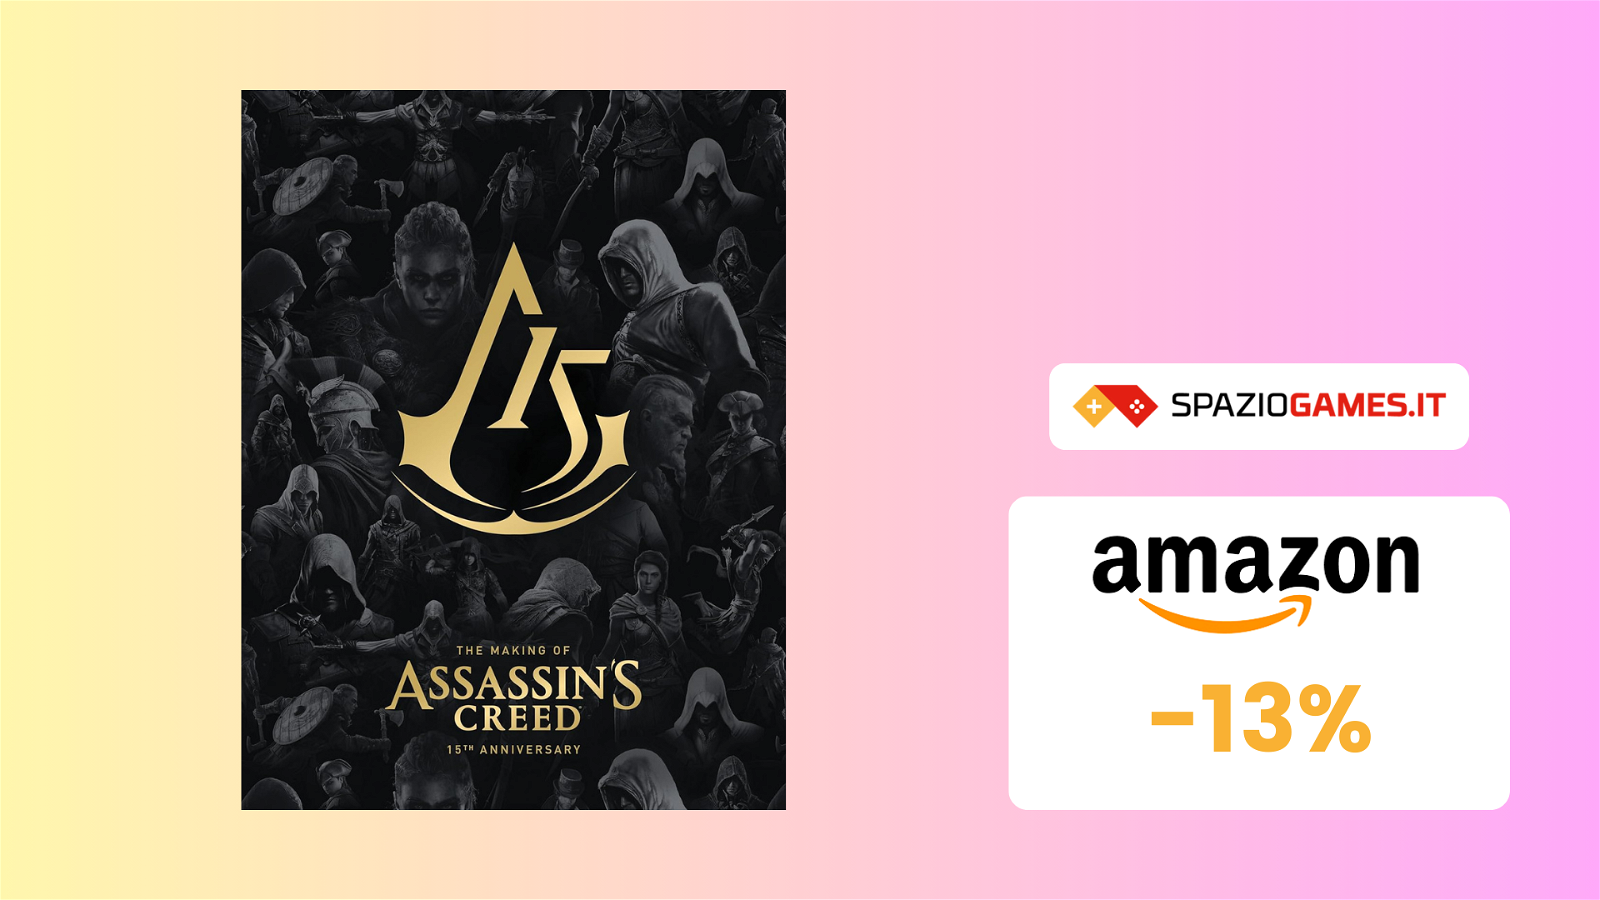 Celebra la serie Assassin's Creed con questo STUPENDO artbook IN OFFERTA! -13%